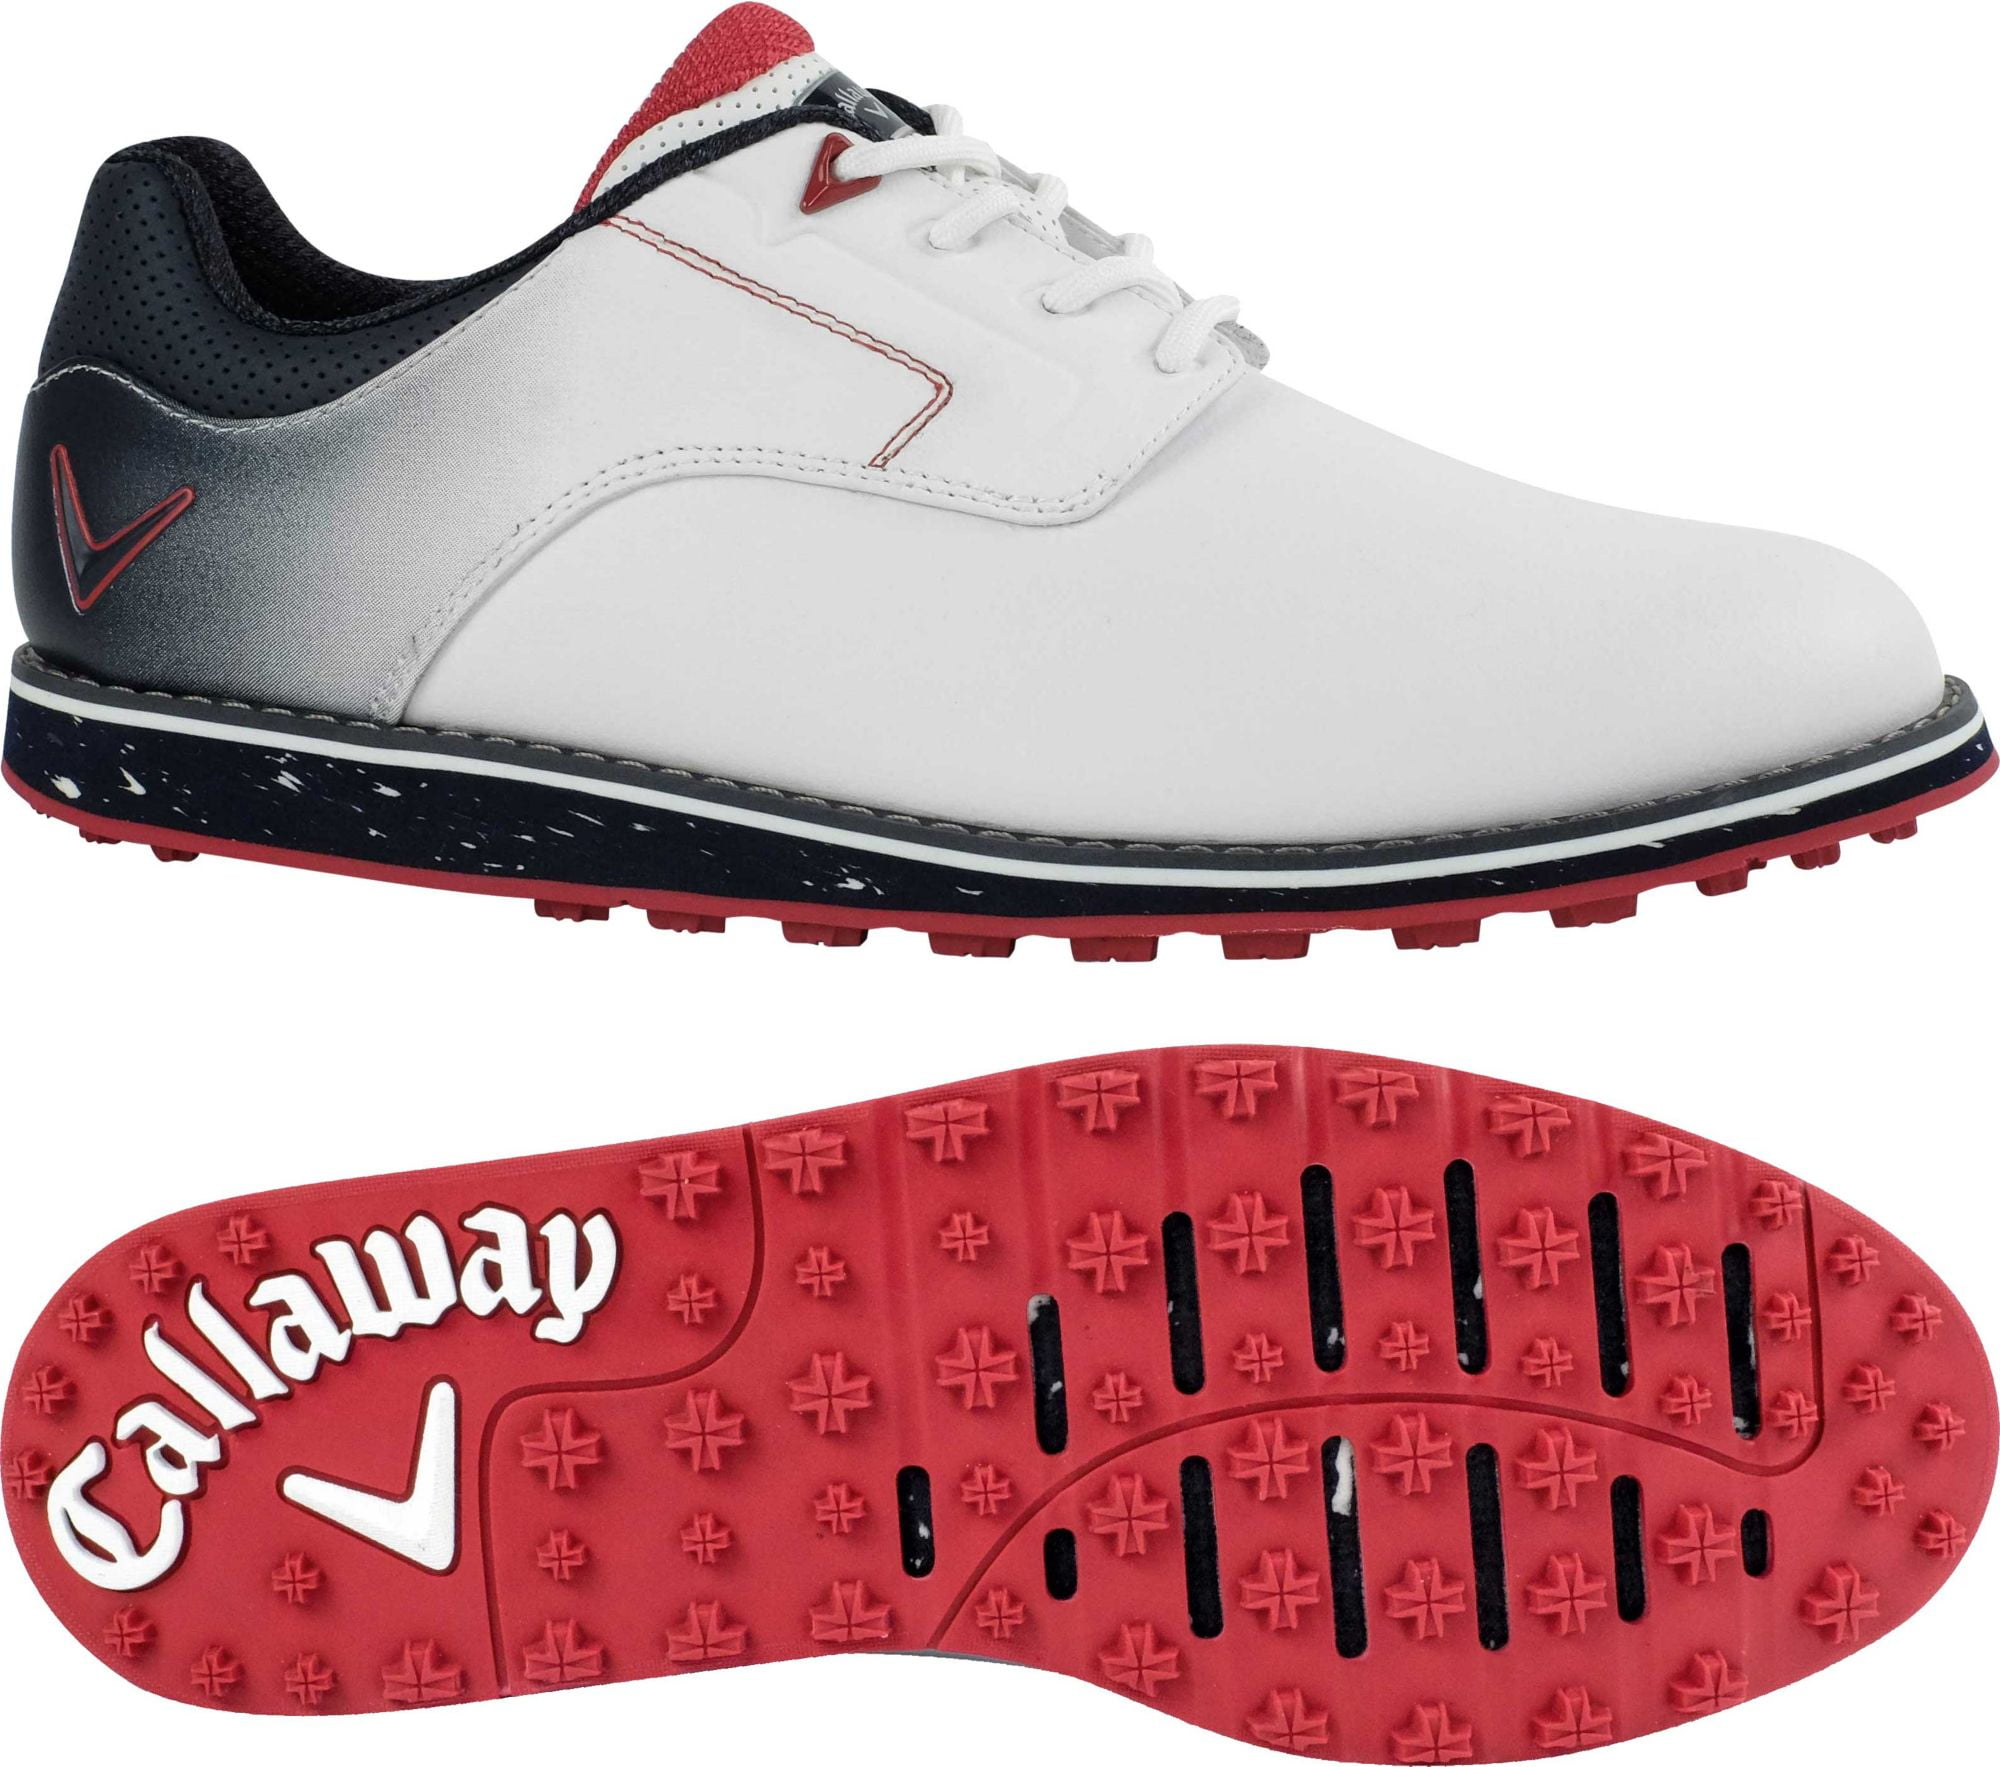 Callaway Men's La Jolla SL Golf Shoes 